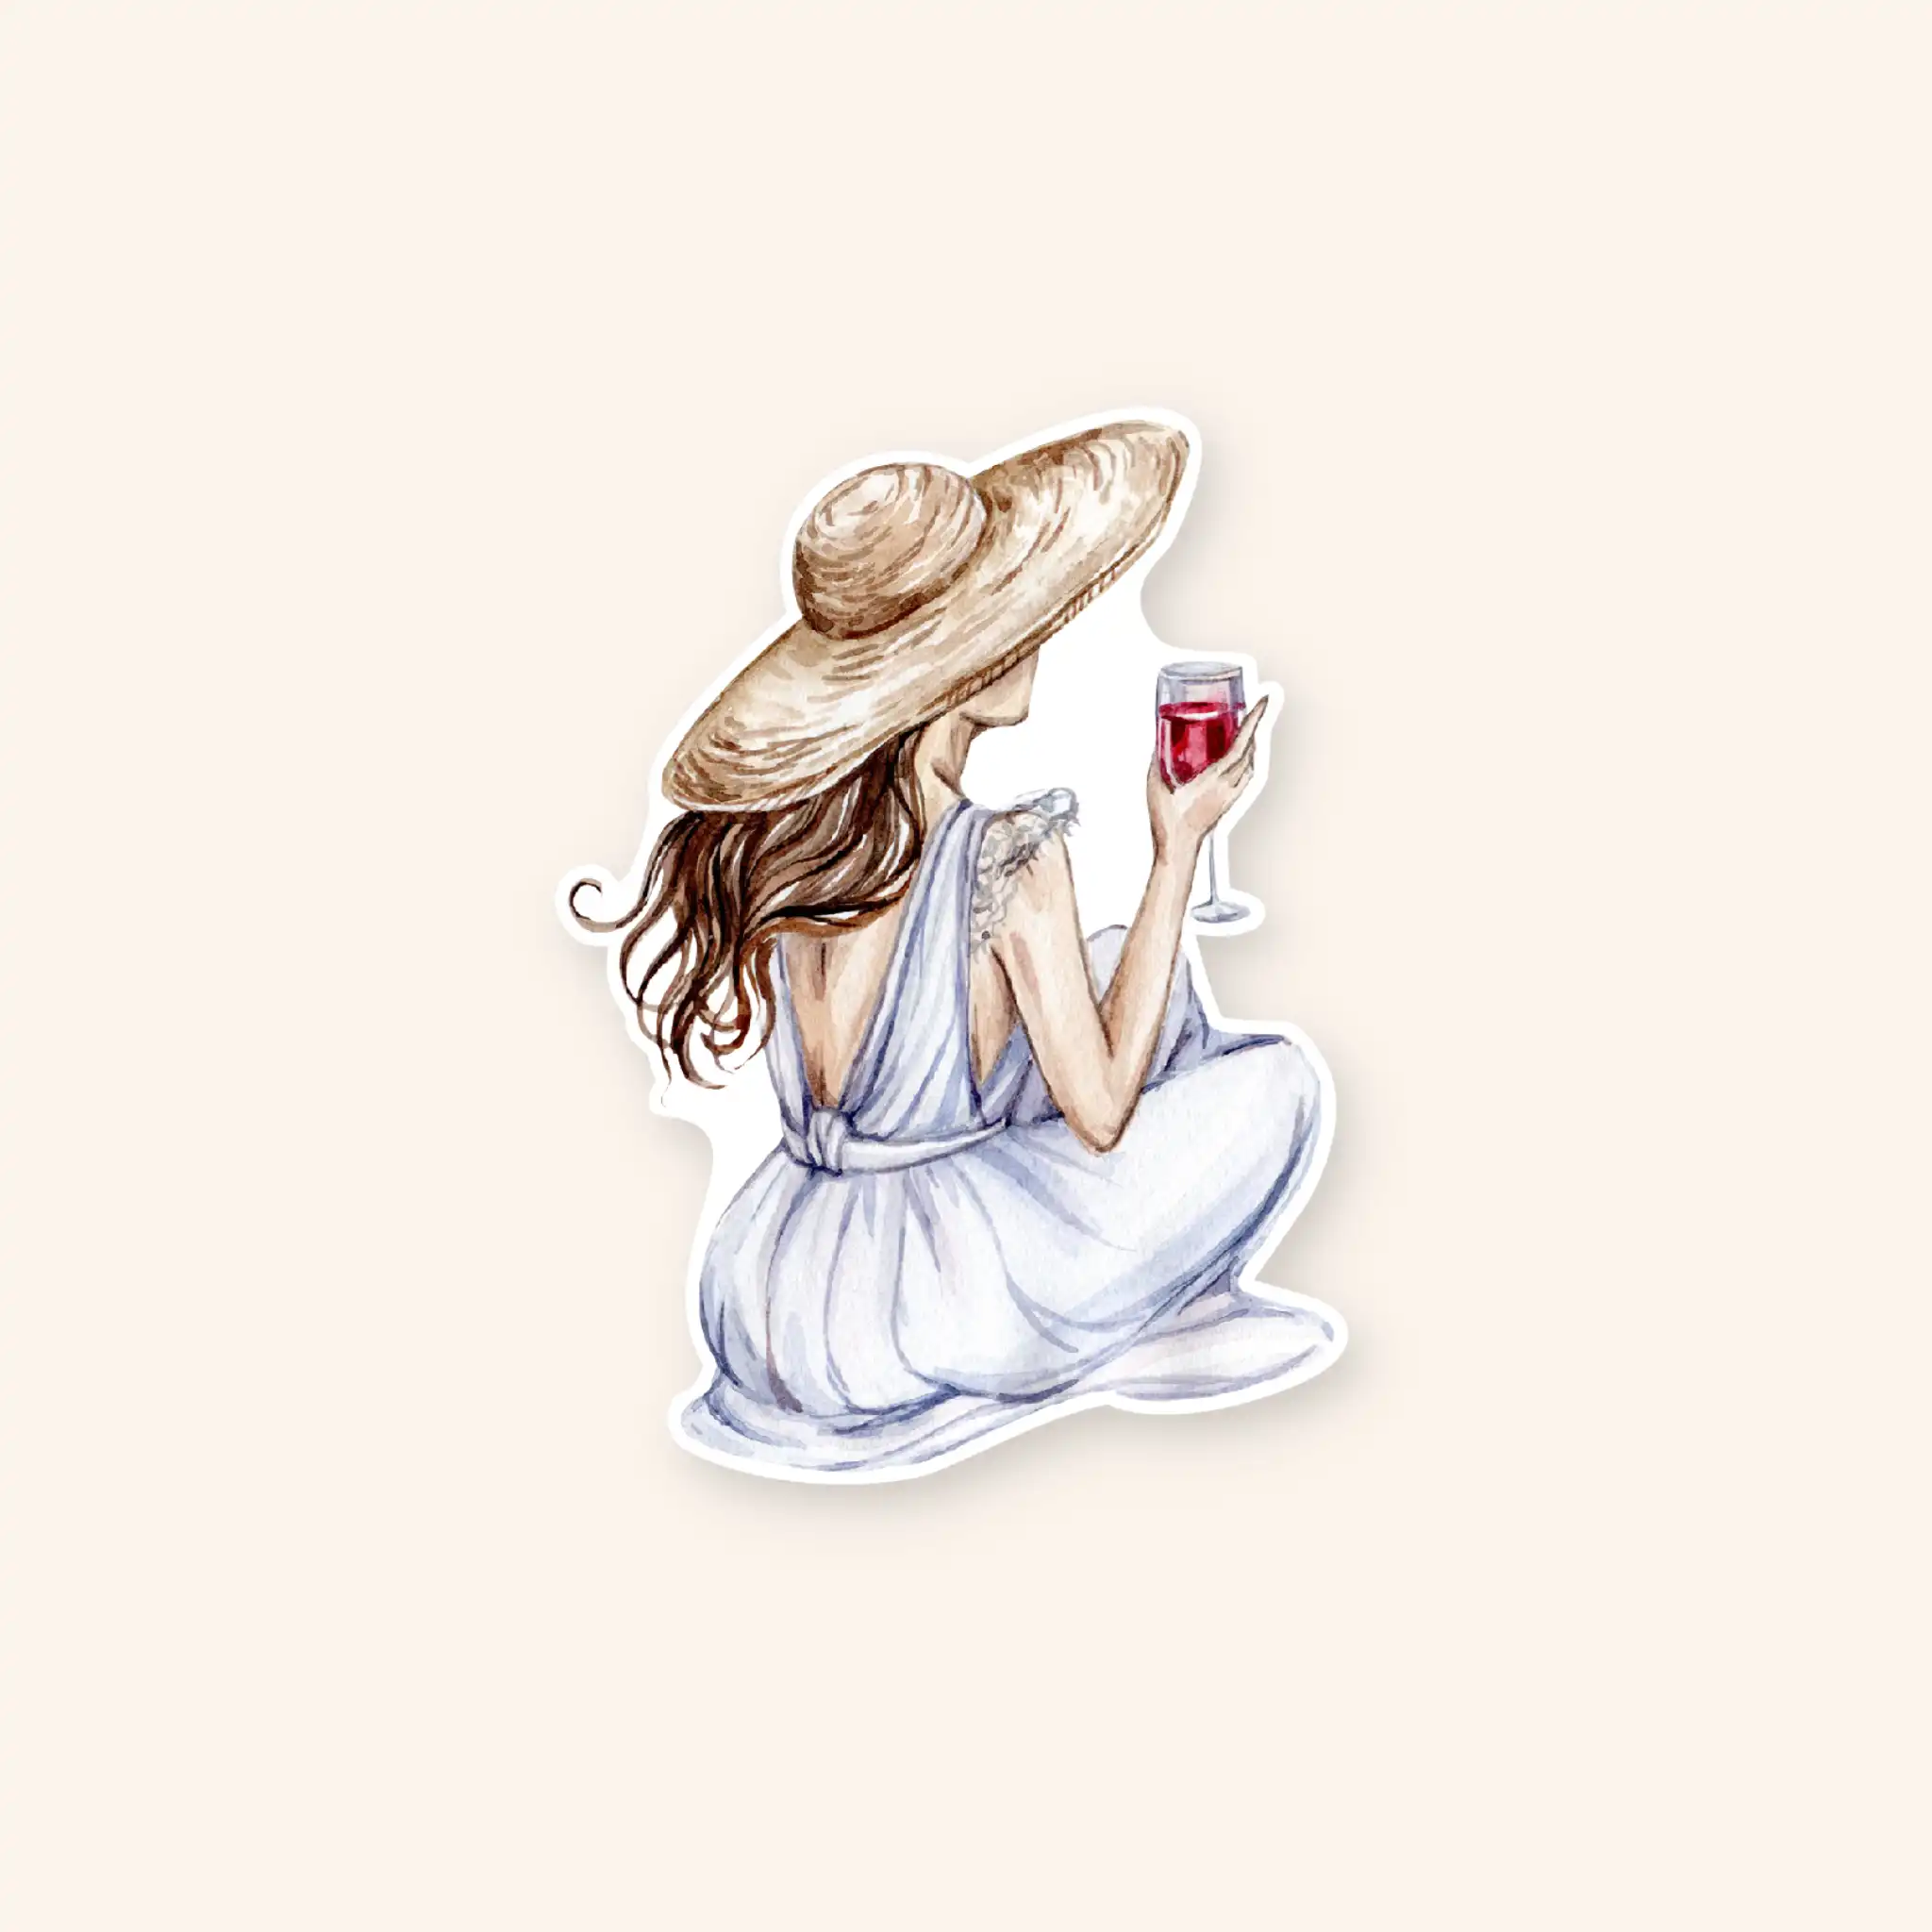 Naljepnica sa motivom djevokje koja sjedi i pije vino.